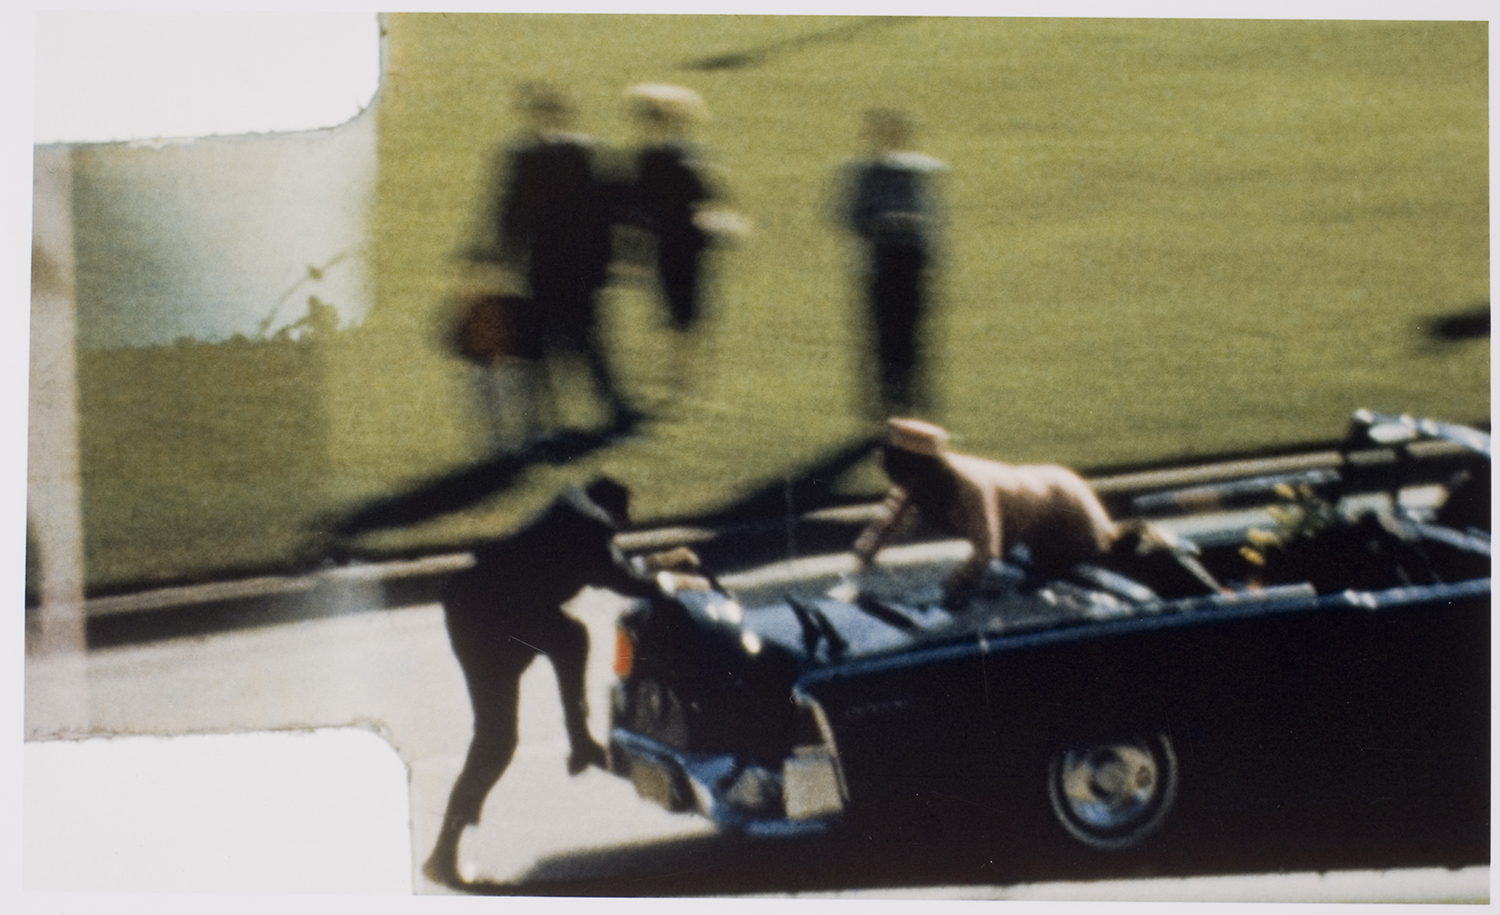  ... the assassination of President John F. Kennedy Jr.], November 22, 1963